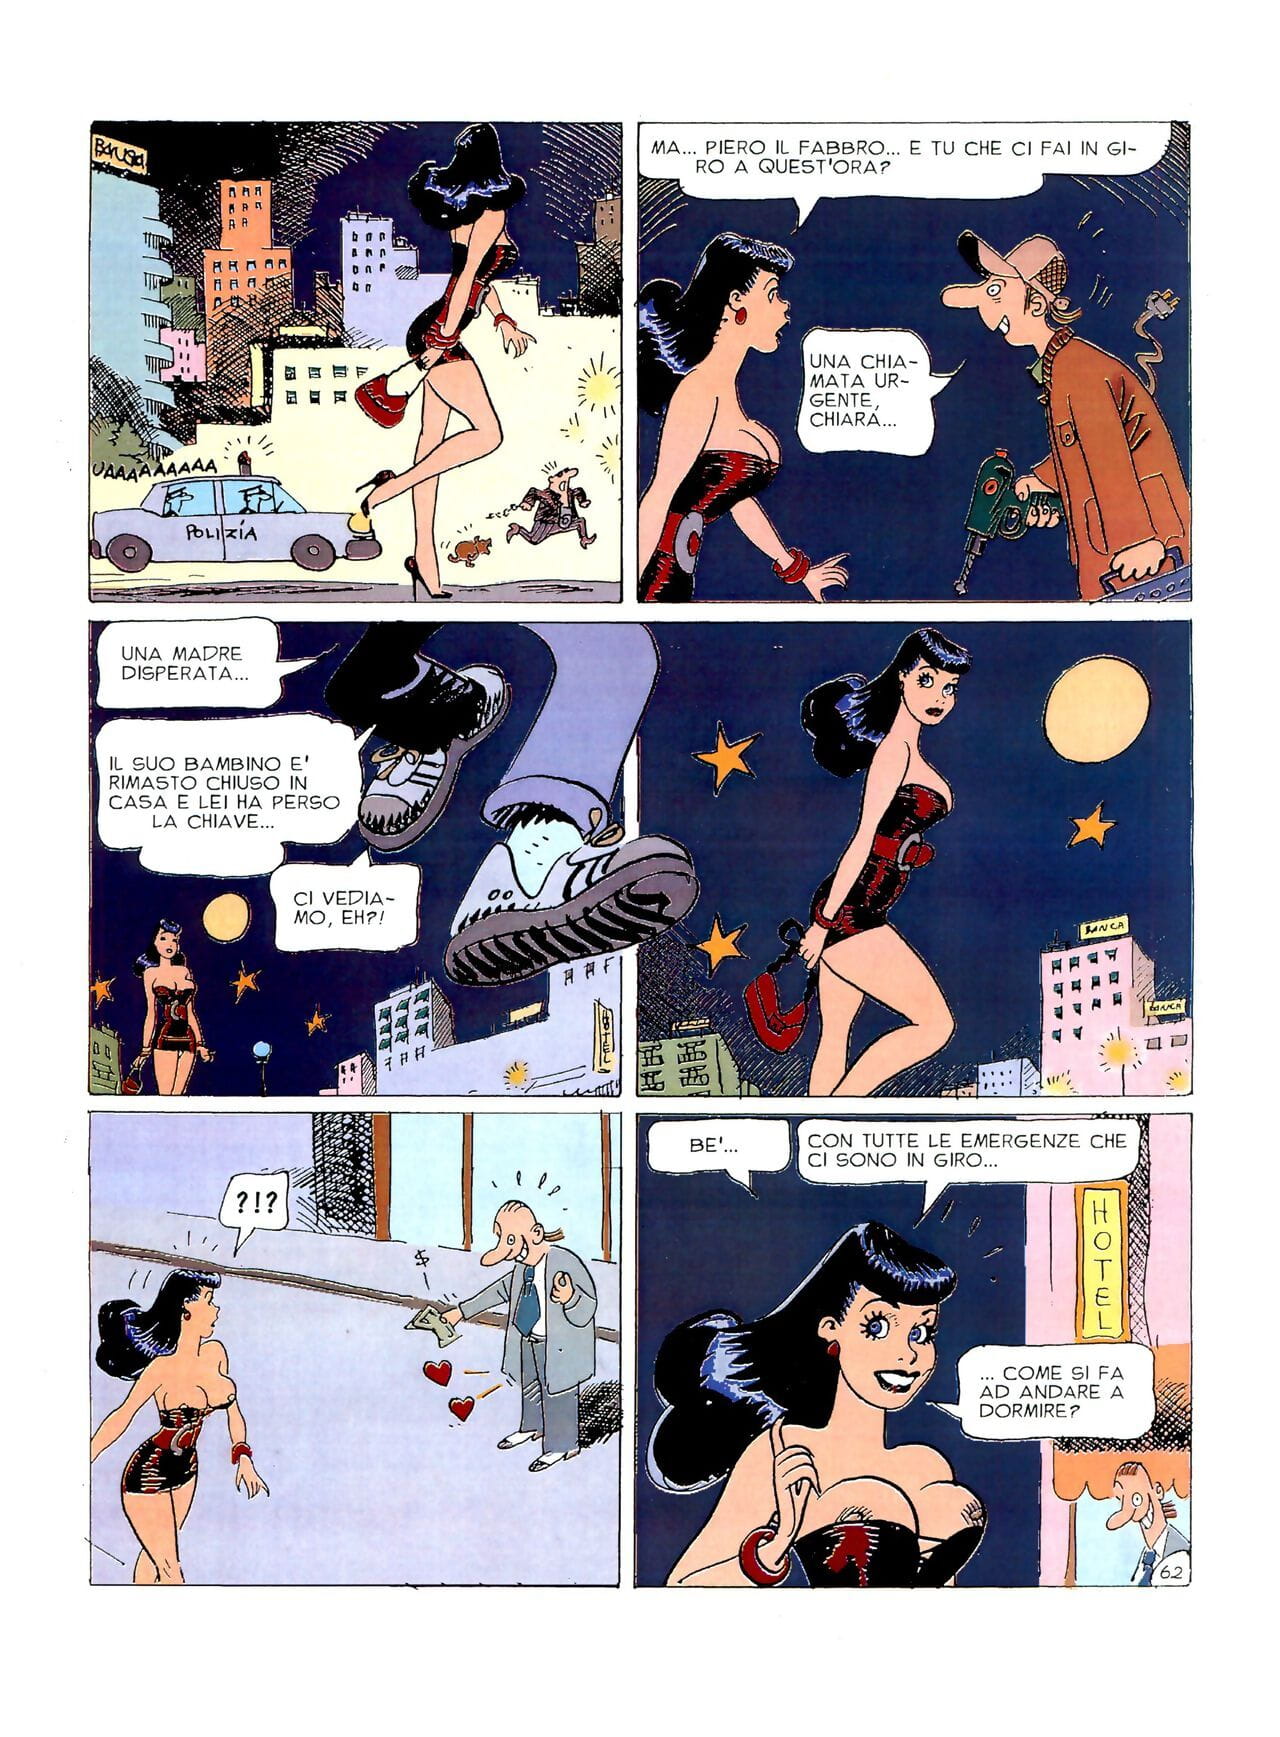 كيارا دي notte #1 جزء 3 page 1